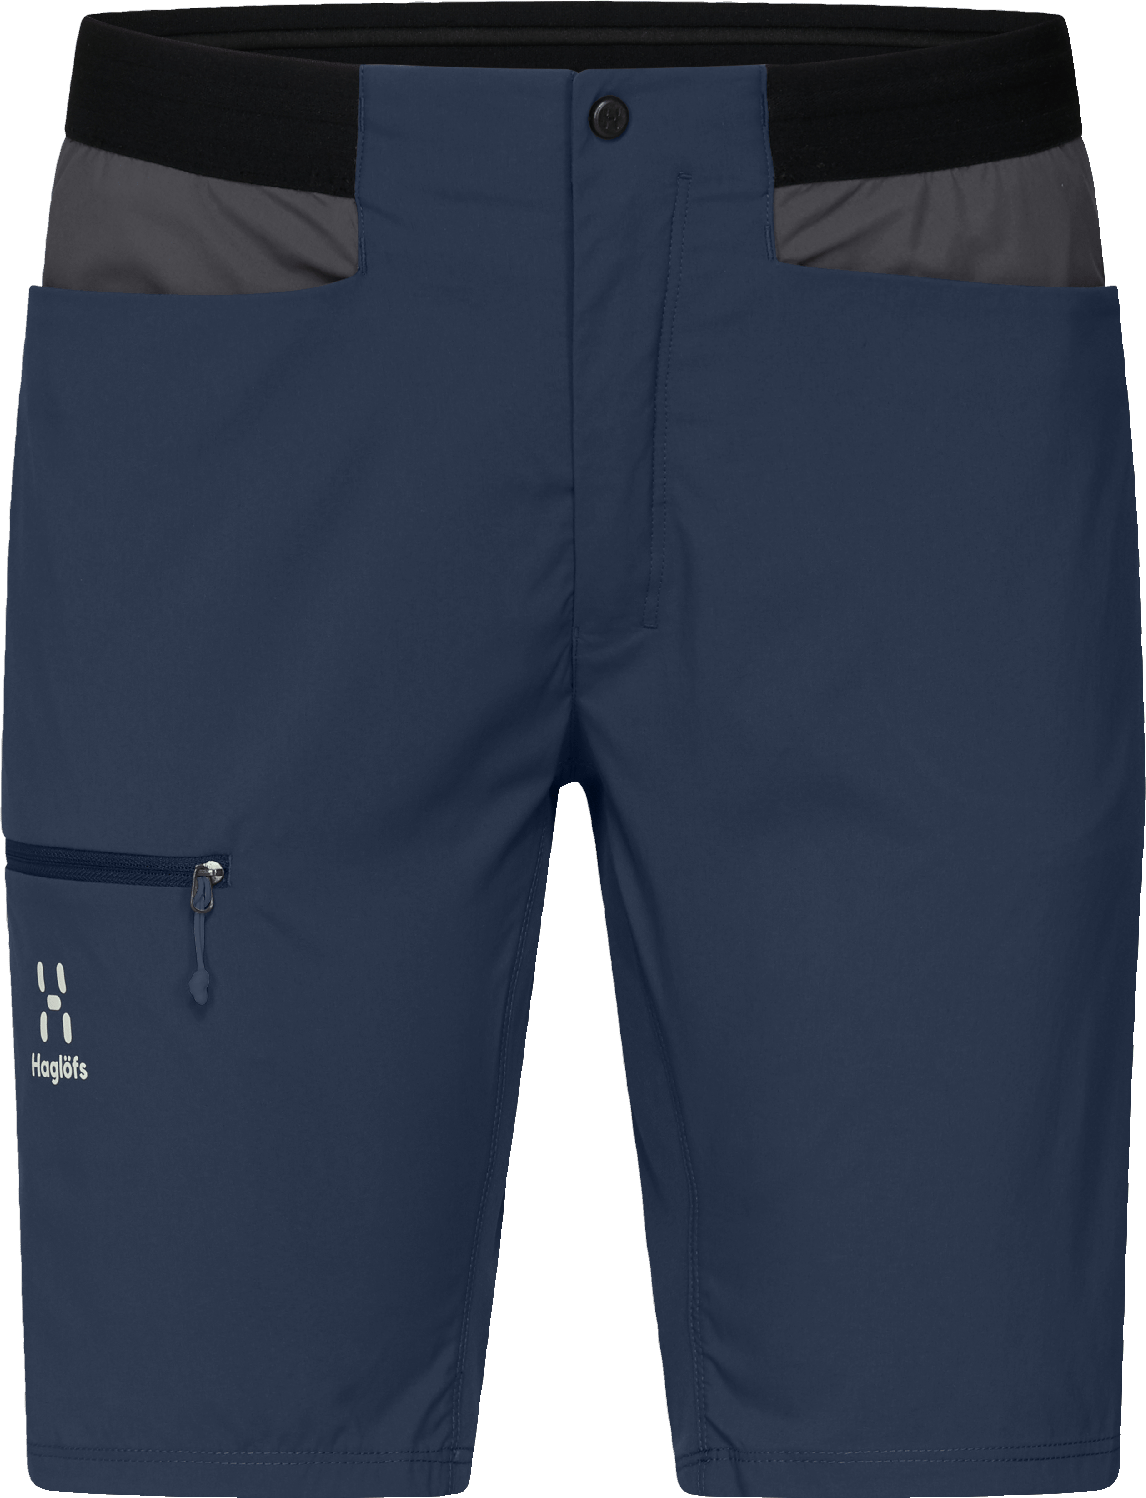 Haglöfs Women's L.I.M Rugged Shorts Tarn Blue/Magnetite